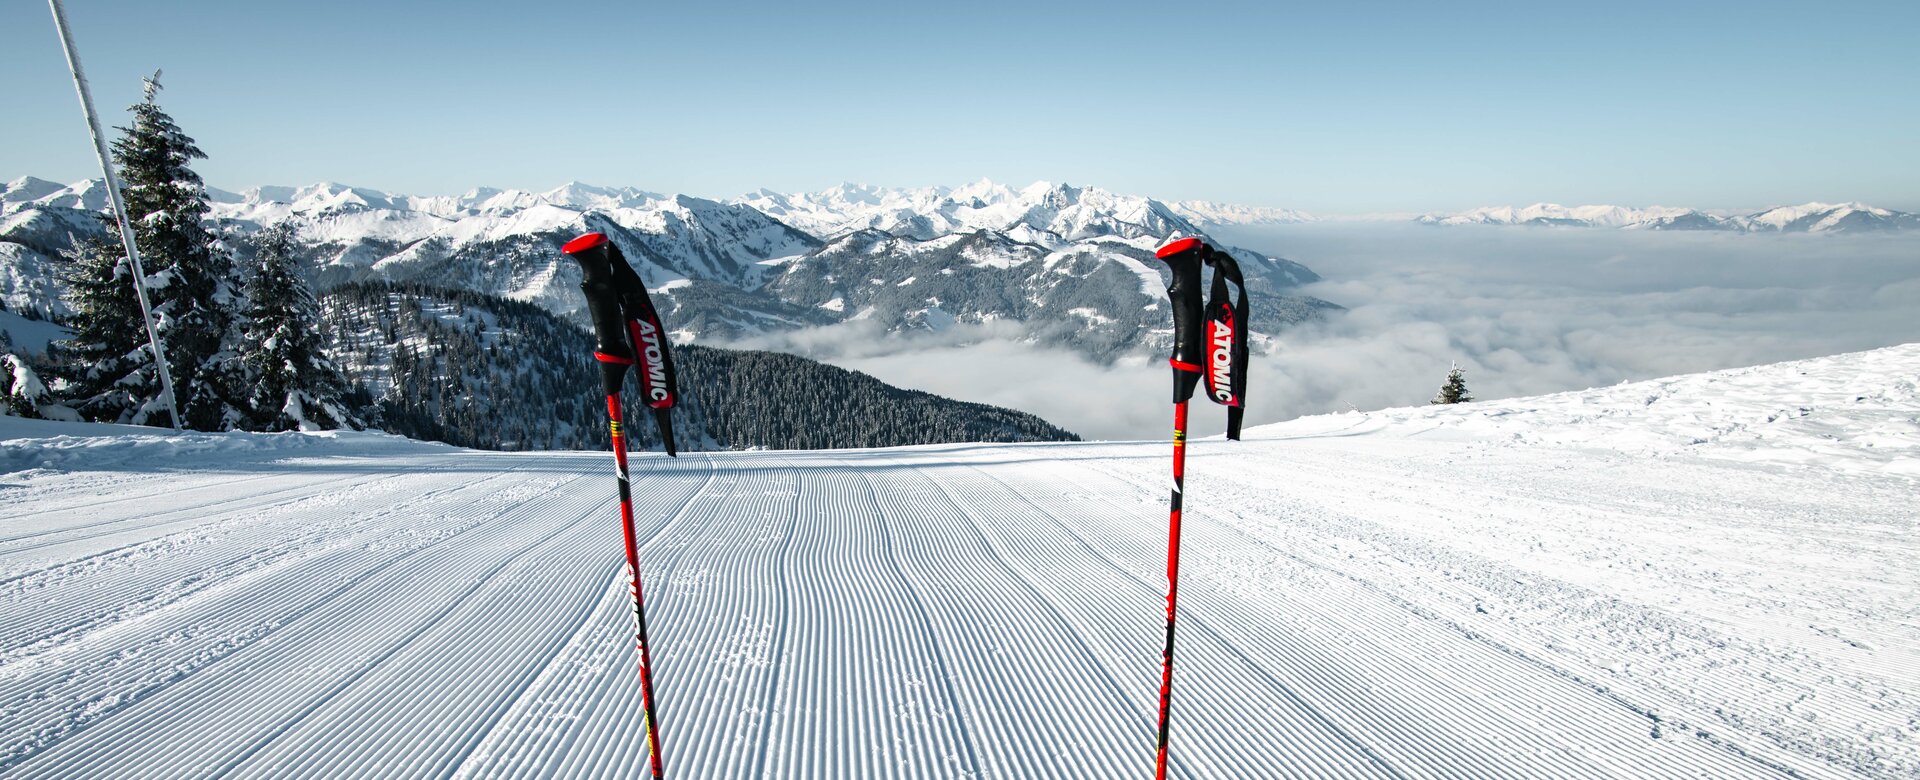 Zwei Skistecken stecken in der frisch präparierten Piste und die Skispitze ist ebenfalls zu sehen genauso wie eine schneebedeckte Berglandschaft in der Ferne | © Snow Space Salzburg Christian Schartner